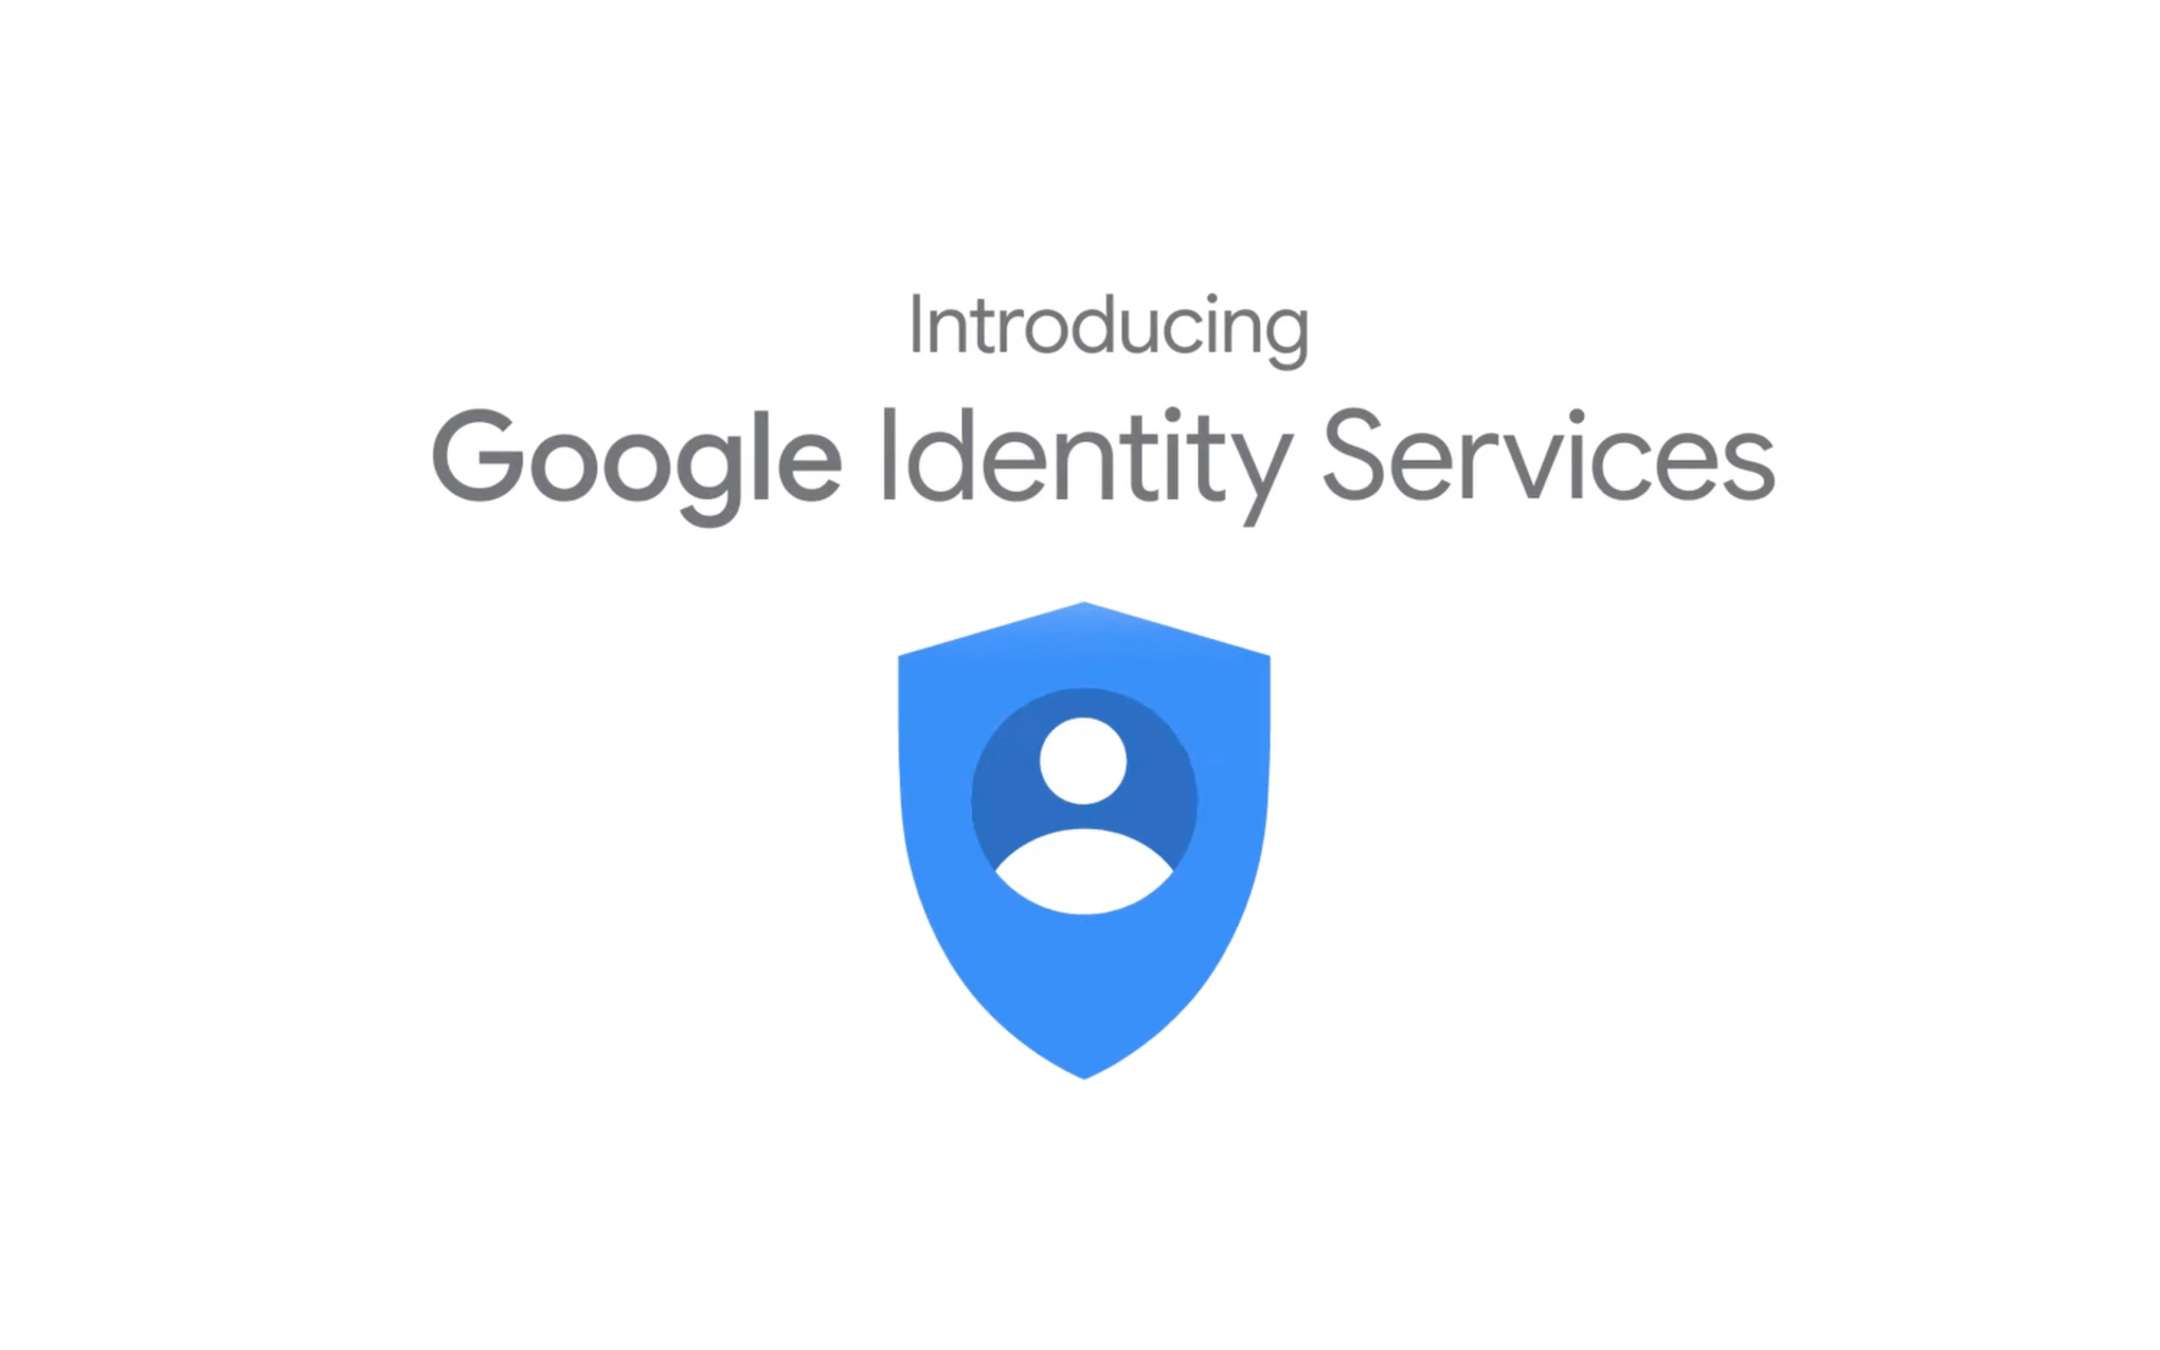 Google One Tap: nuovo sistema di autenticazione